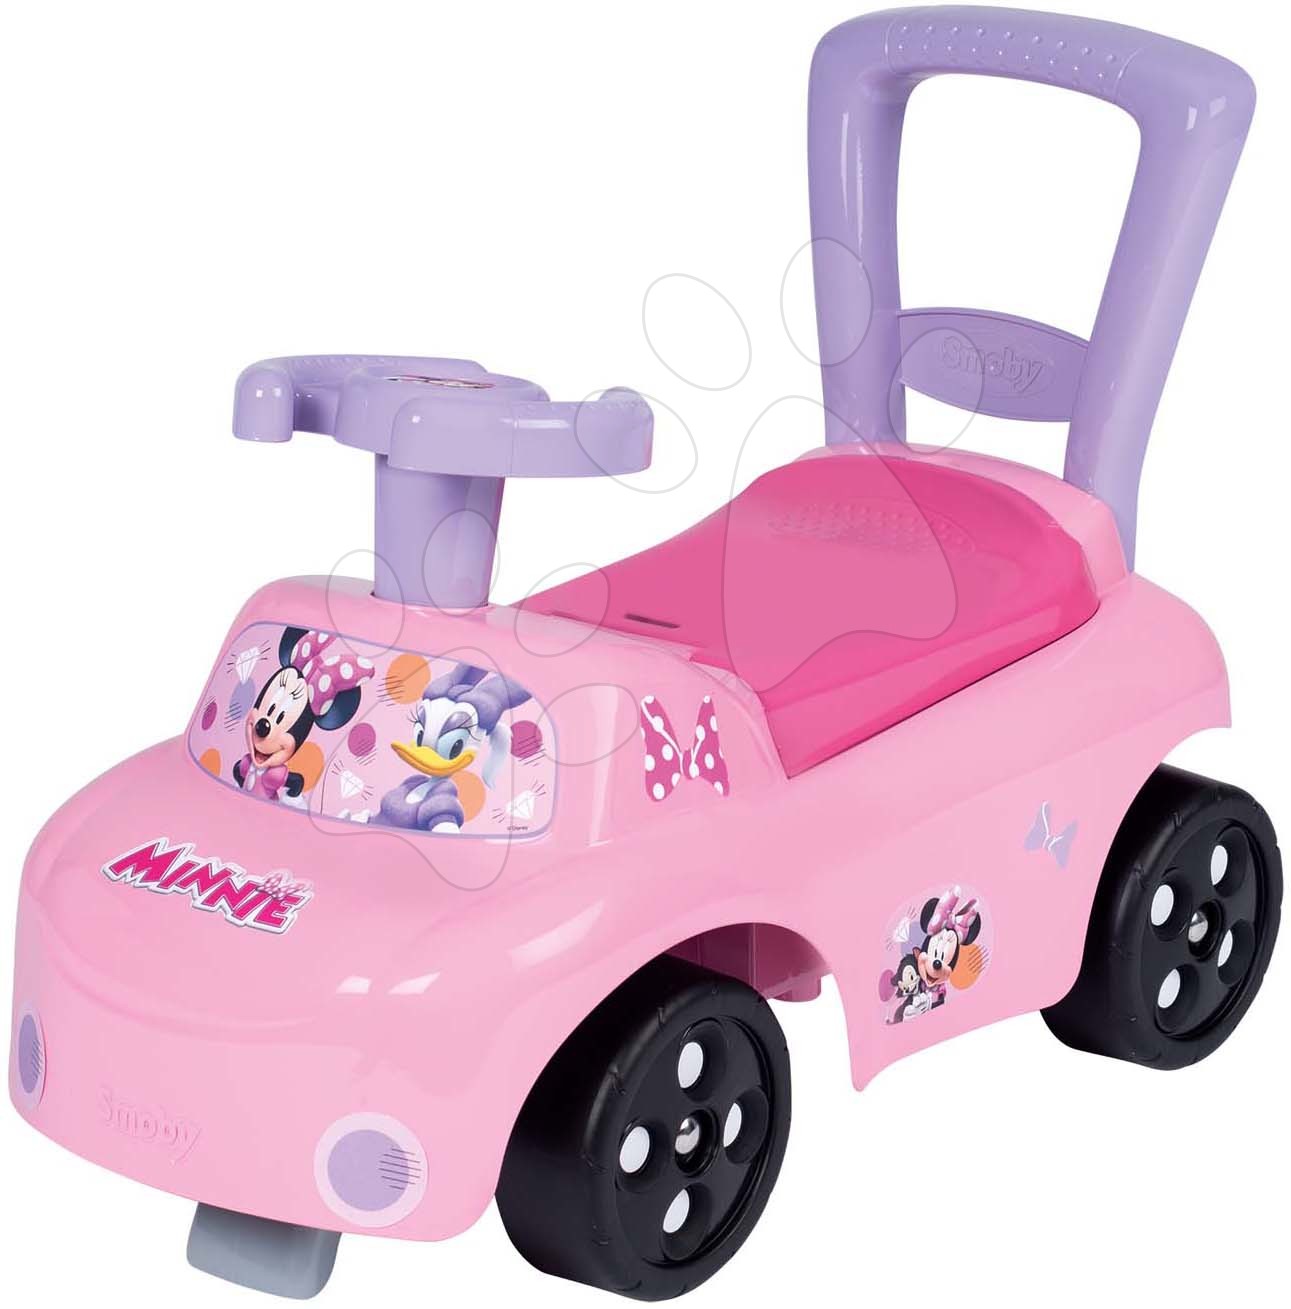 Babytaxiuri de la 10 luni - Babytaxiu și premergător Minnie Auto Ride-On Disney Smoby cu spătar și spațiu de depozitare de la 10 luni